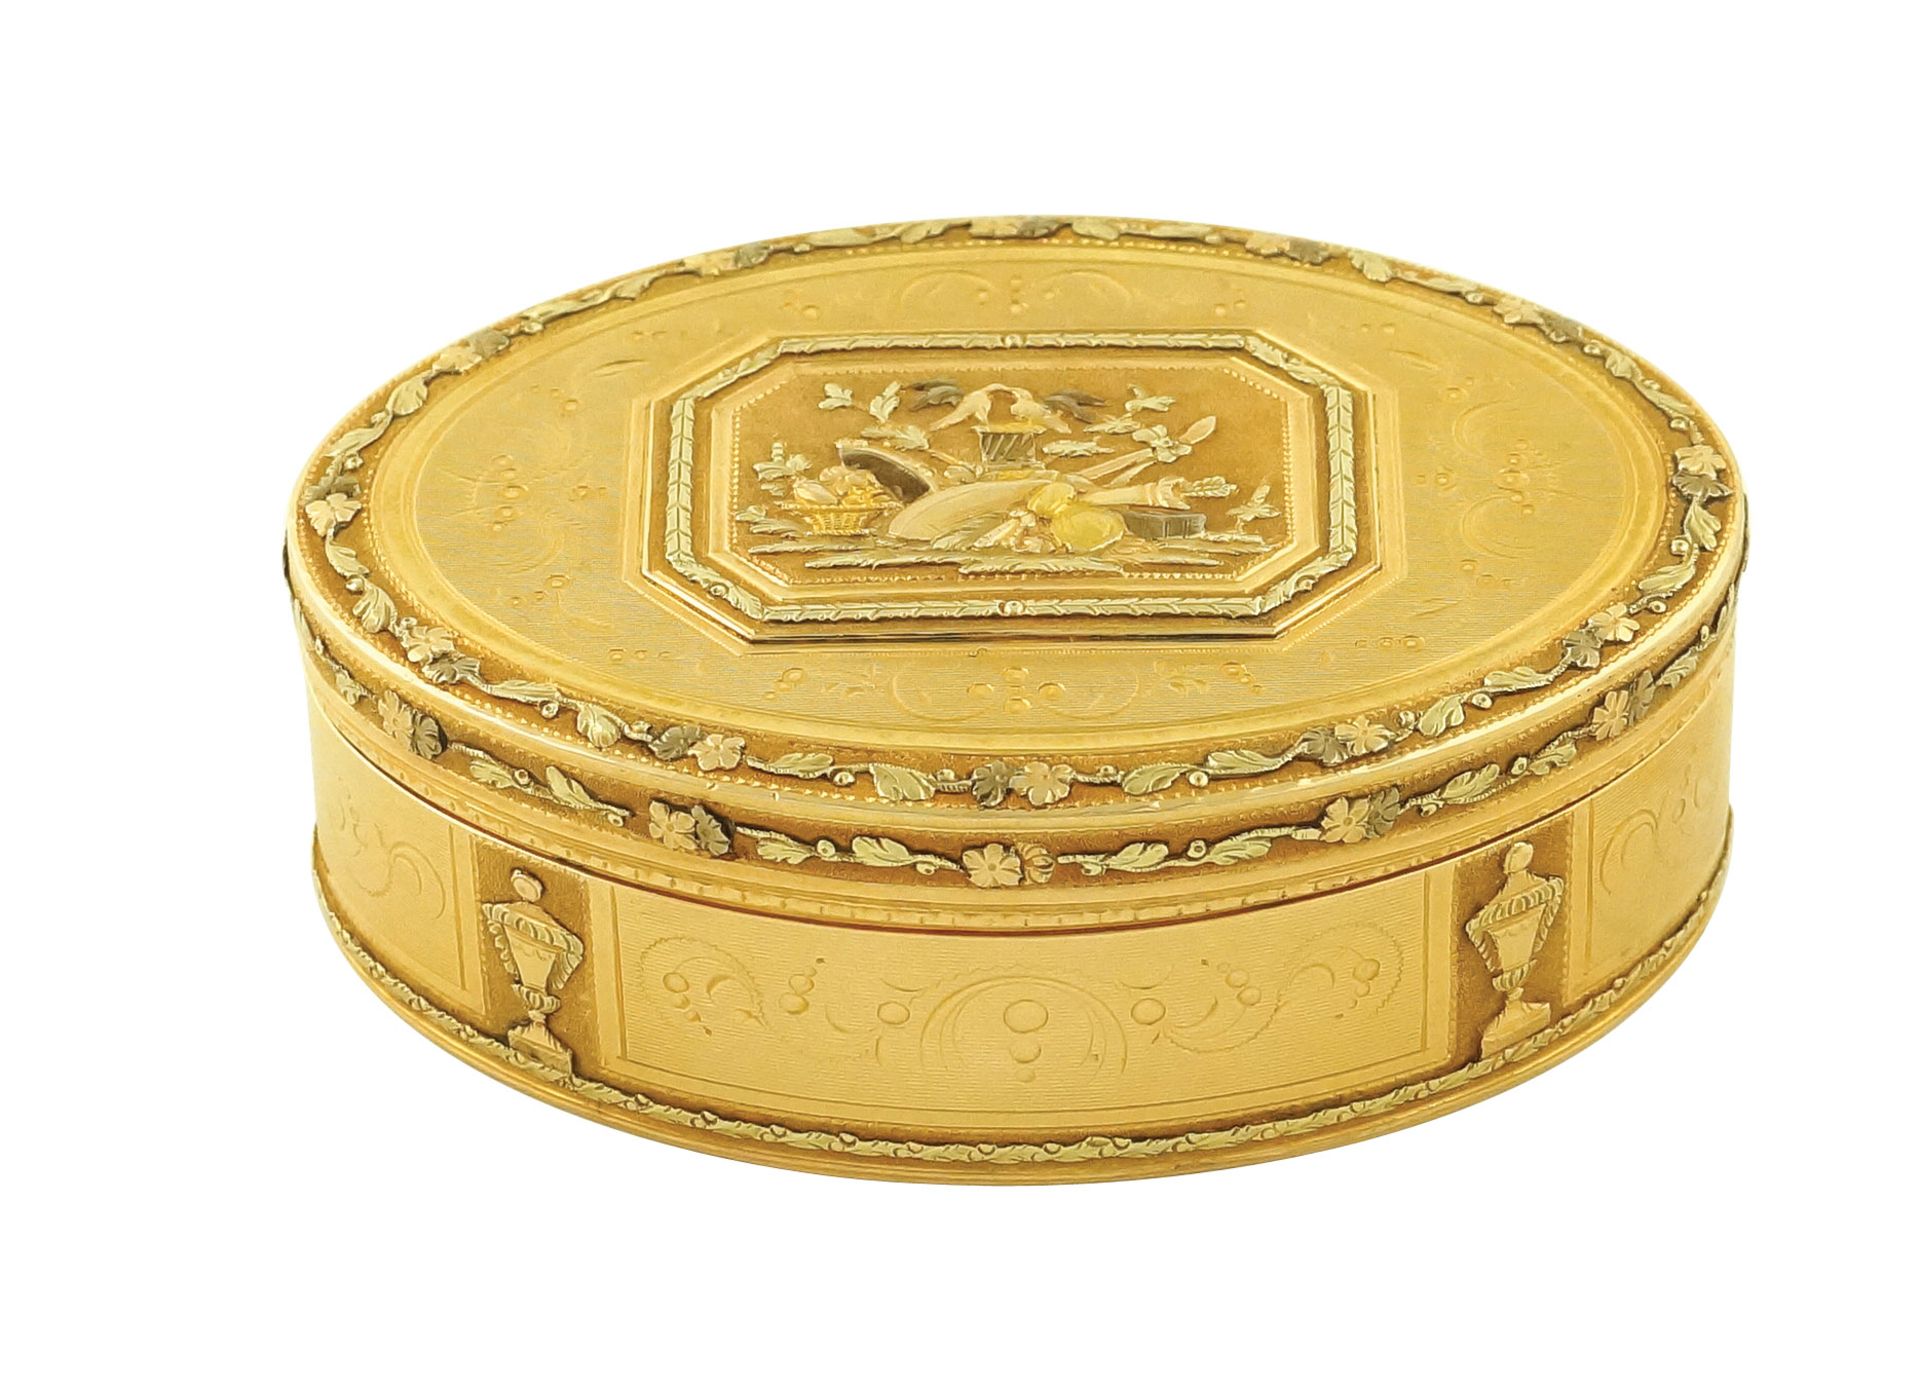 A French bicolor gold snuff box